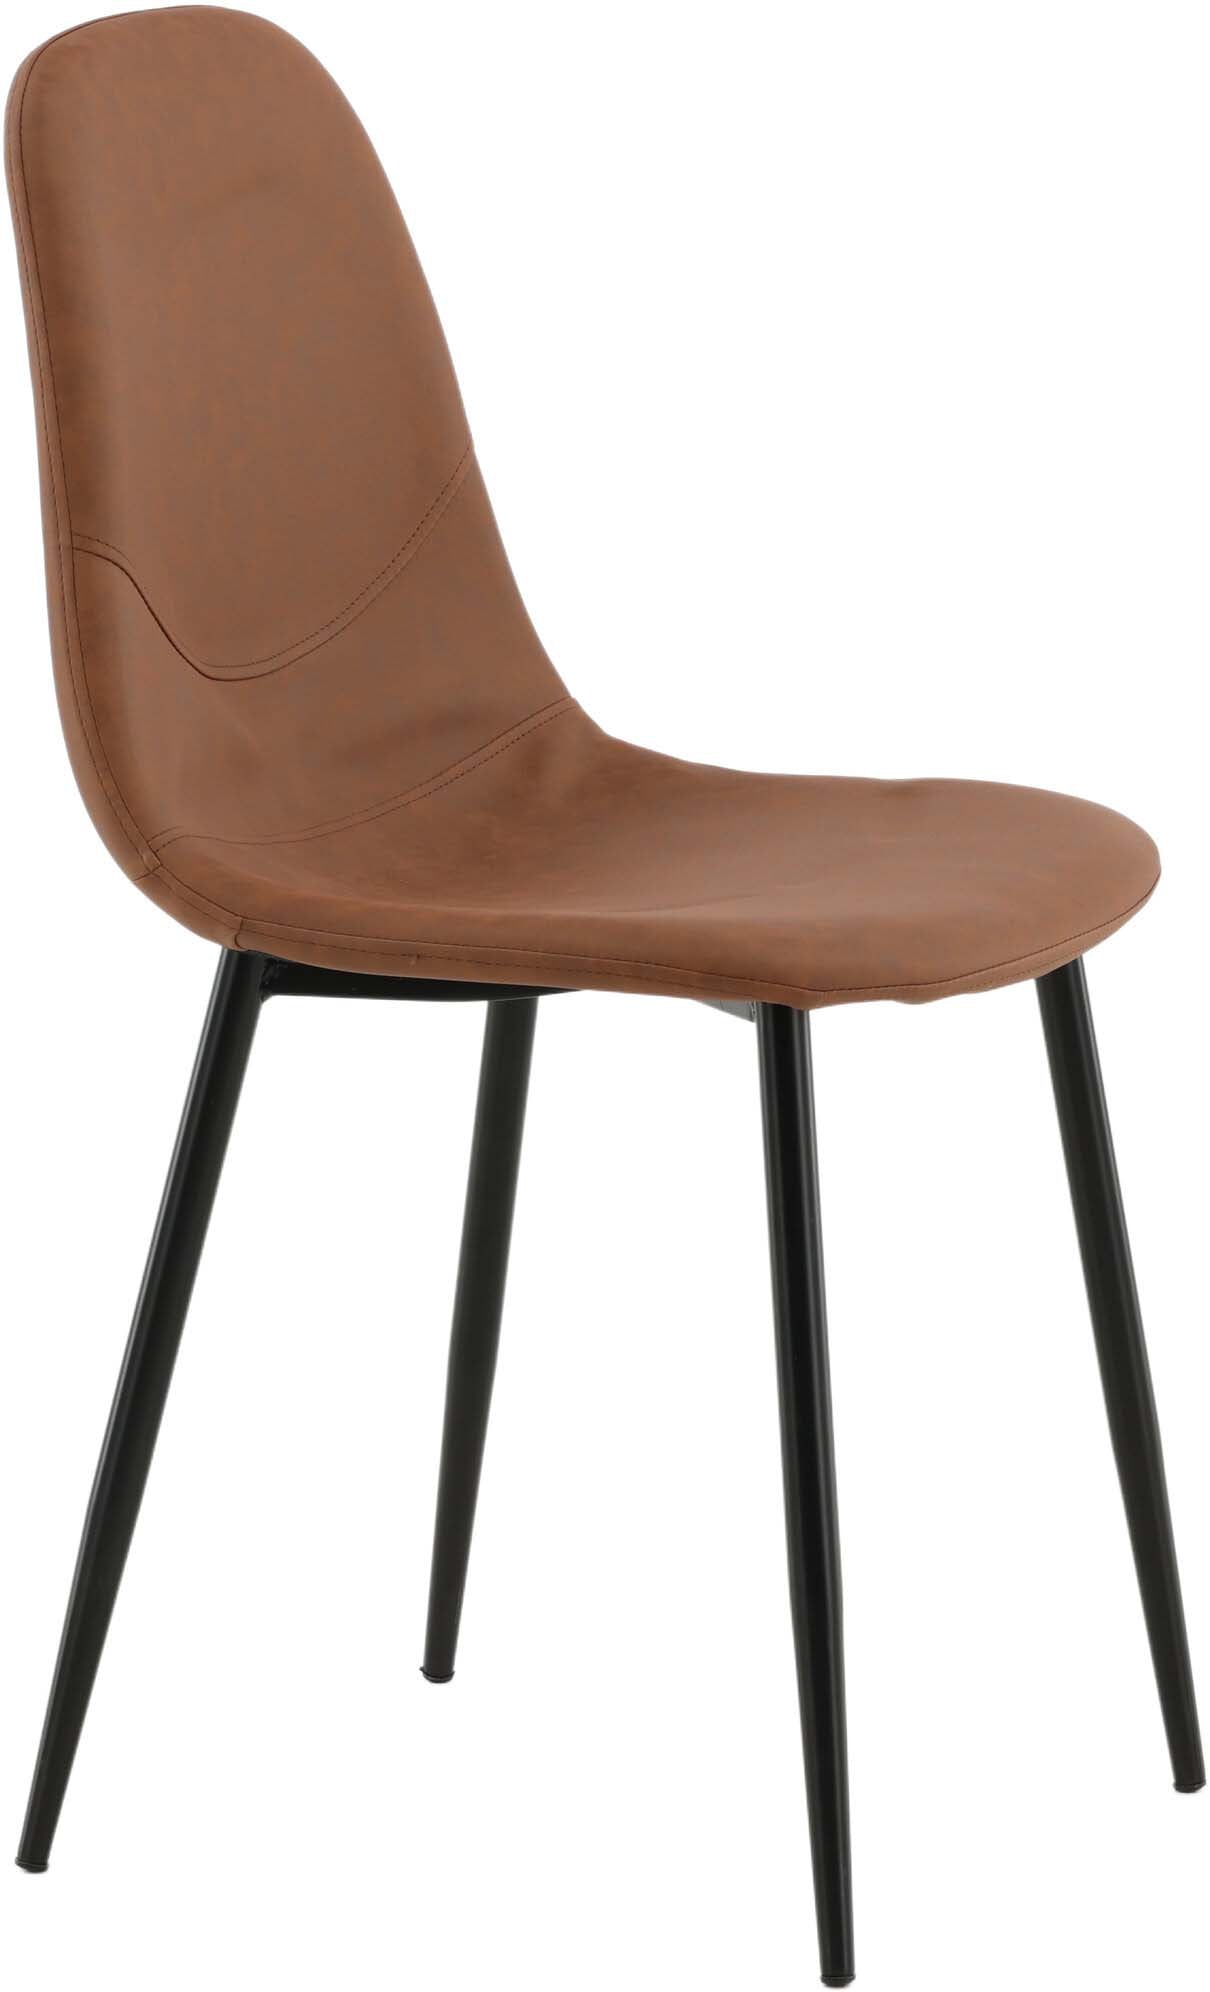 Polar Stuhl in Braun präsentiert im Onlineshop von KAQTU Design AG. Stuhl ist von Venture Home